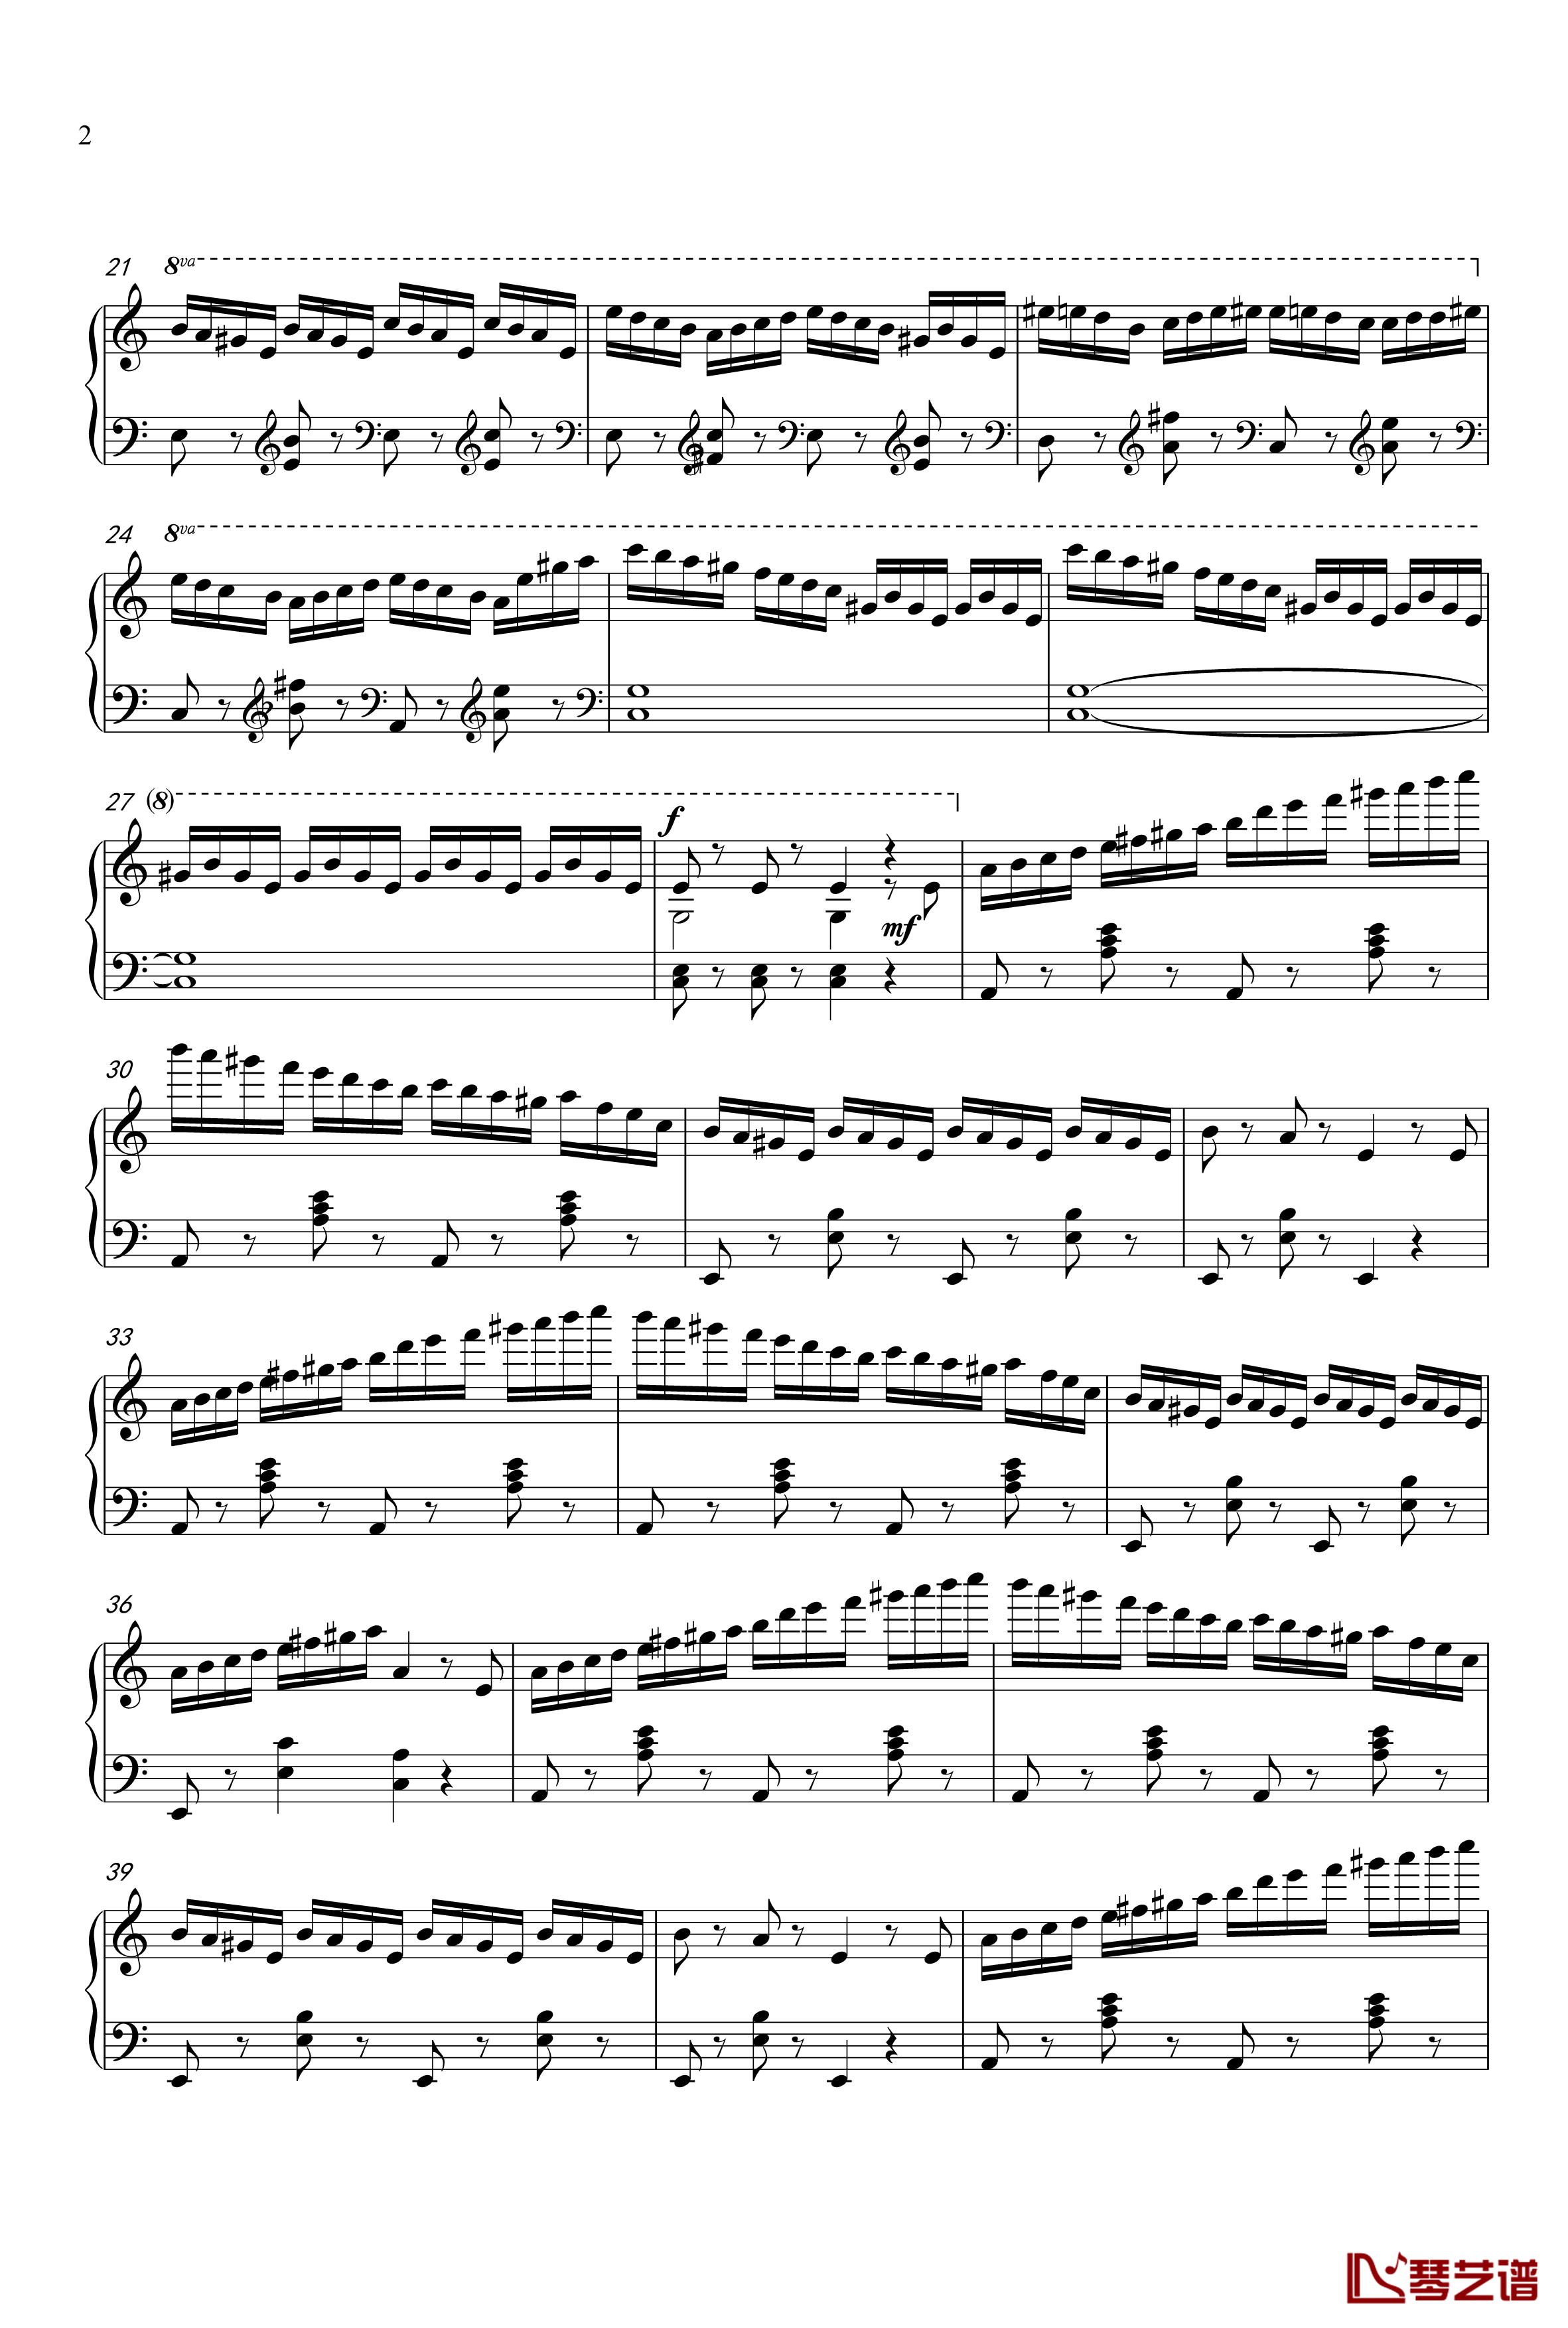 练习曲钢琴谱-zd20